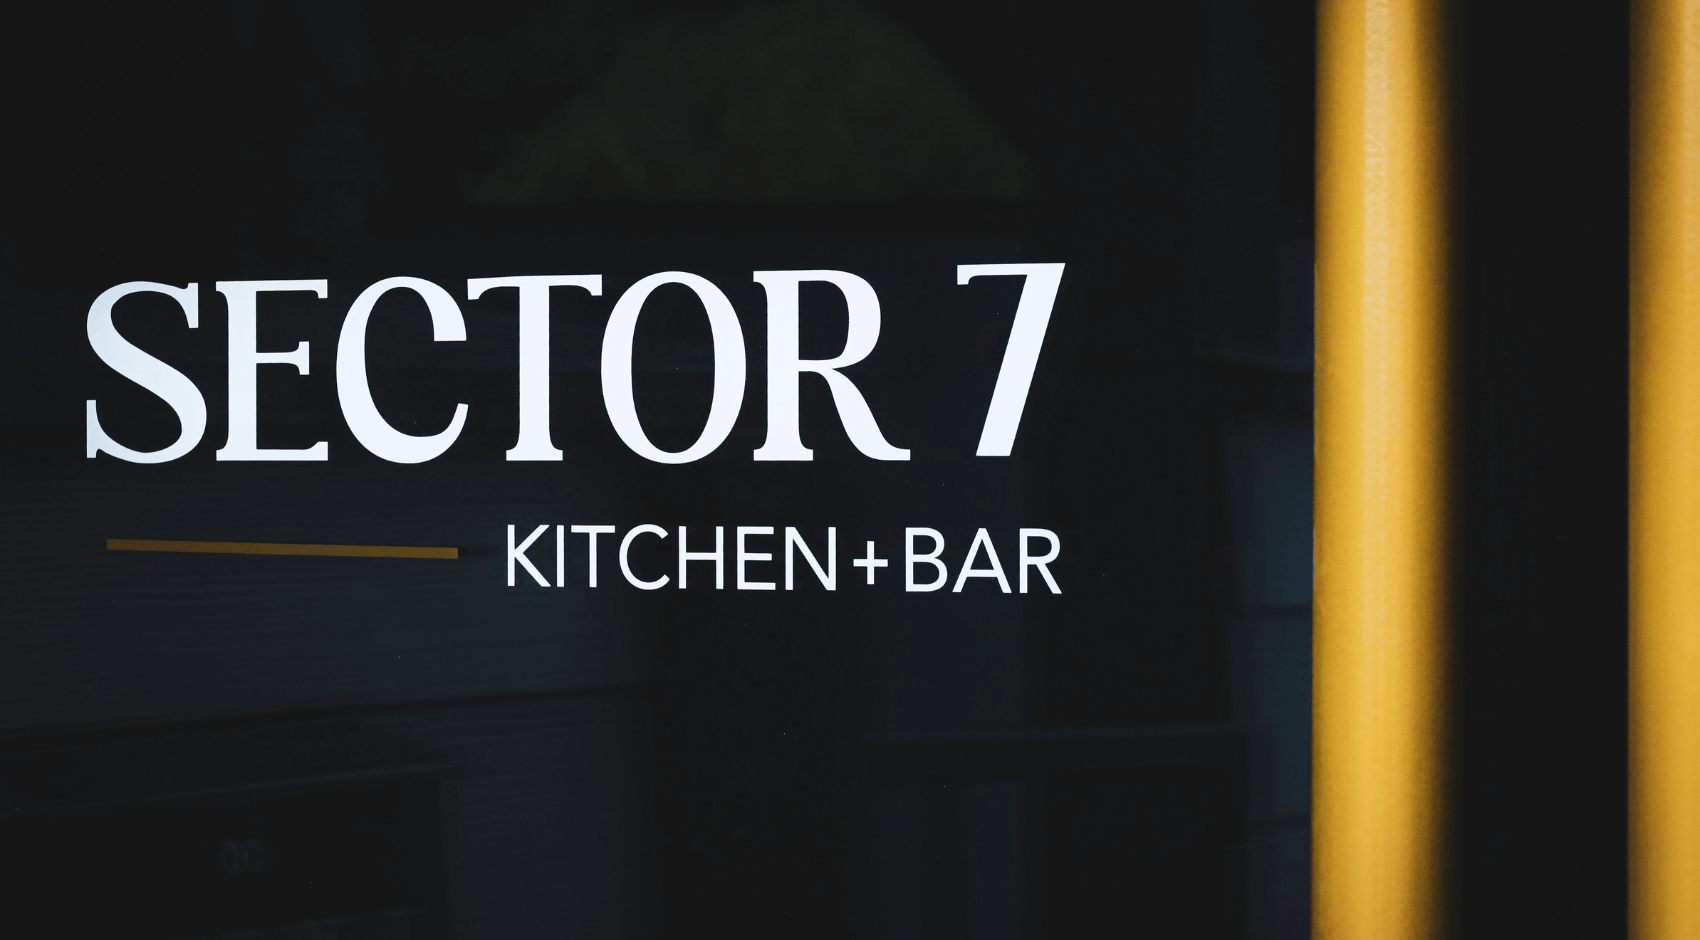 Best Restaurant in Richmond Sector 7 Kitchen + Bar